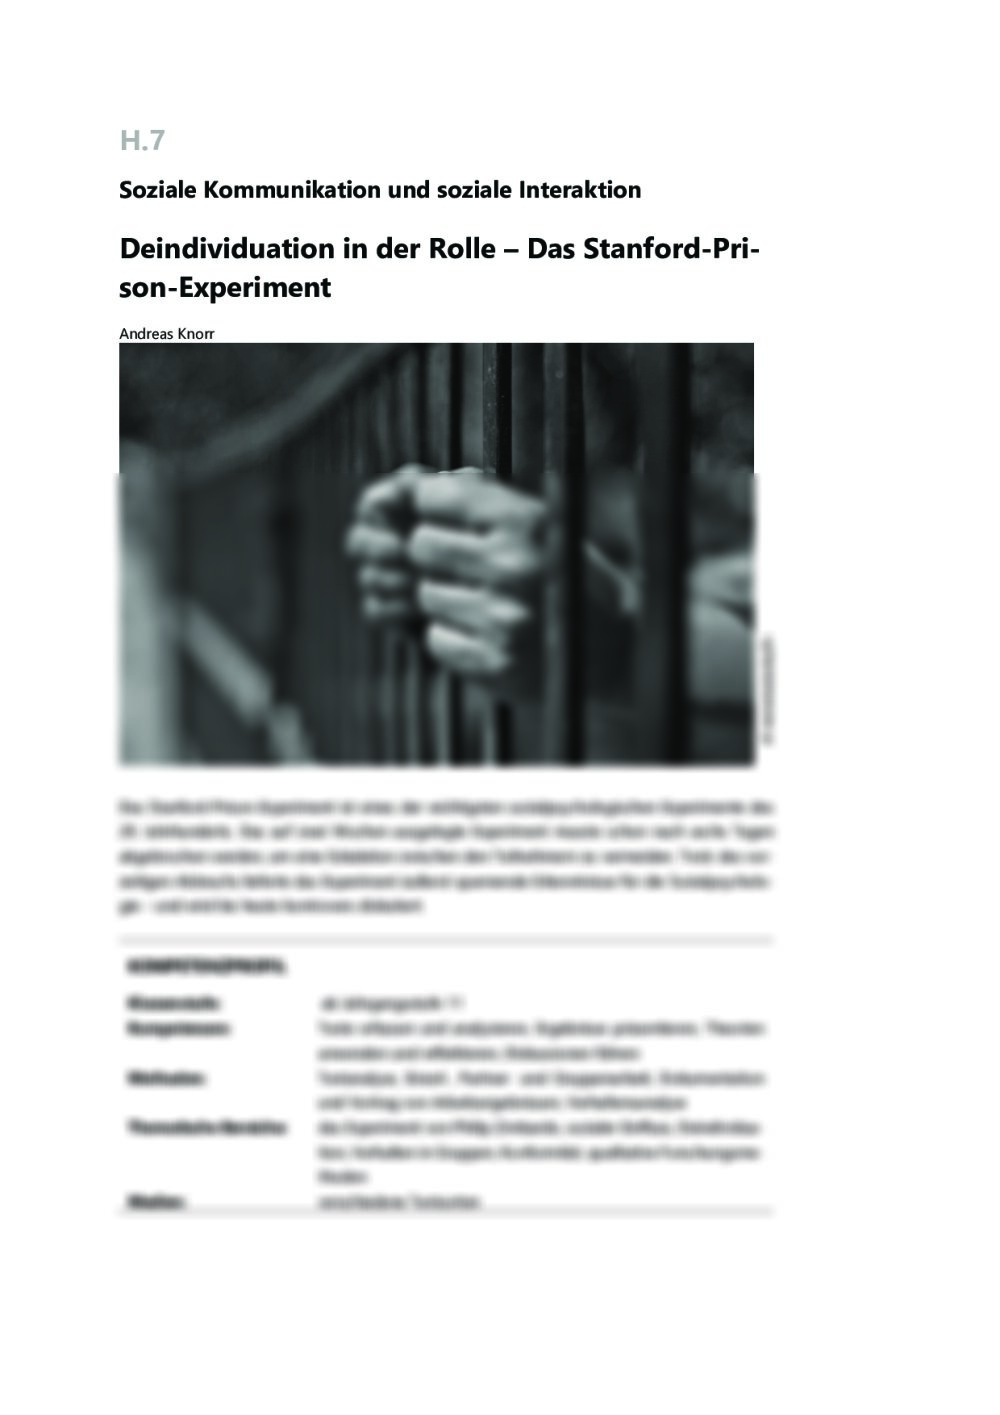 Stanford-Prison-Experiment - Seite 1